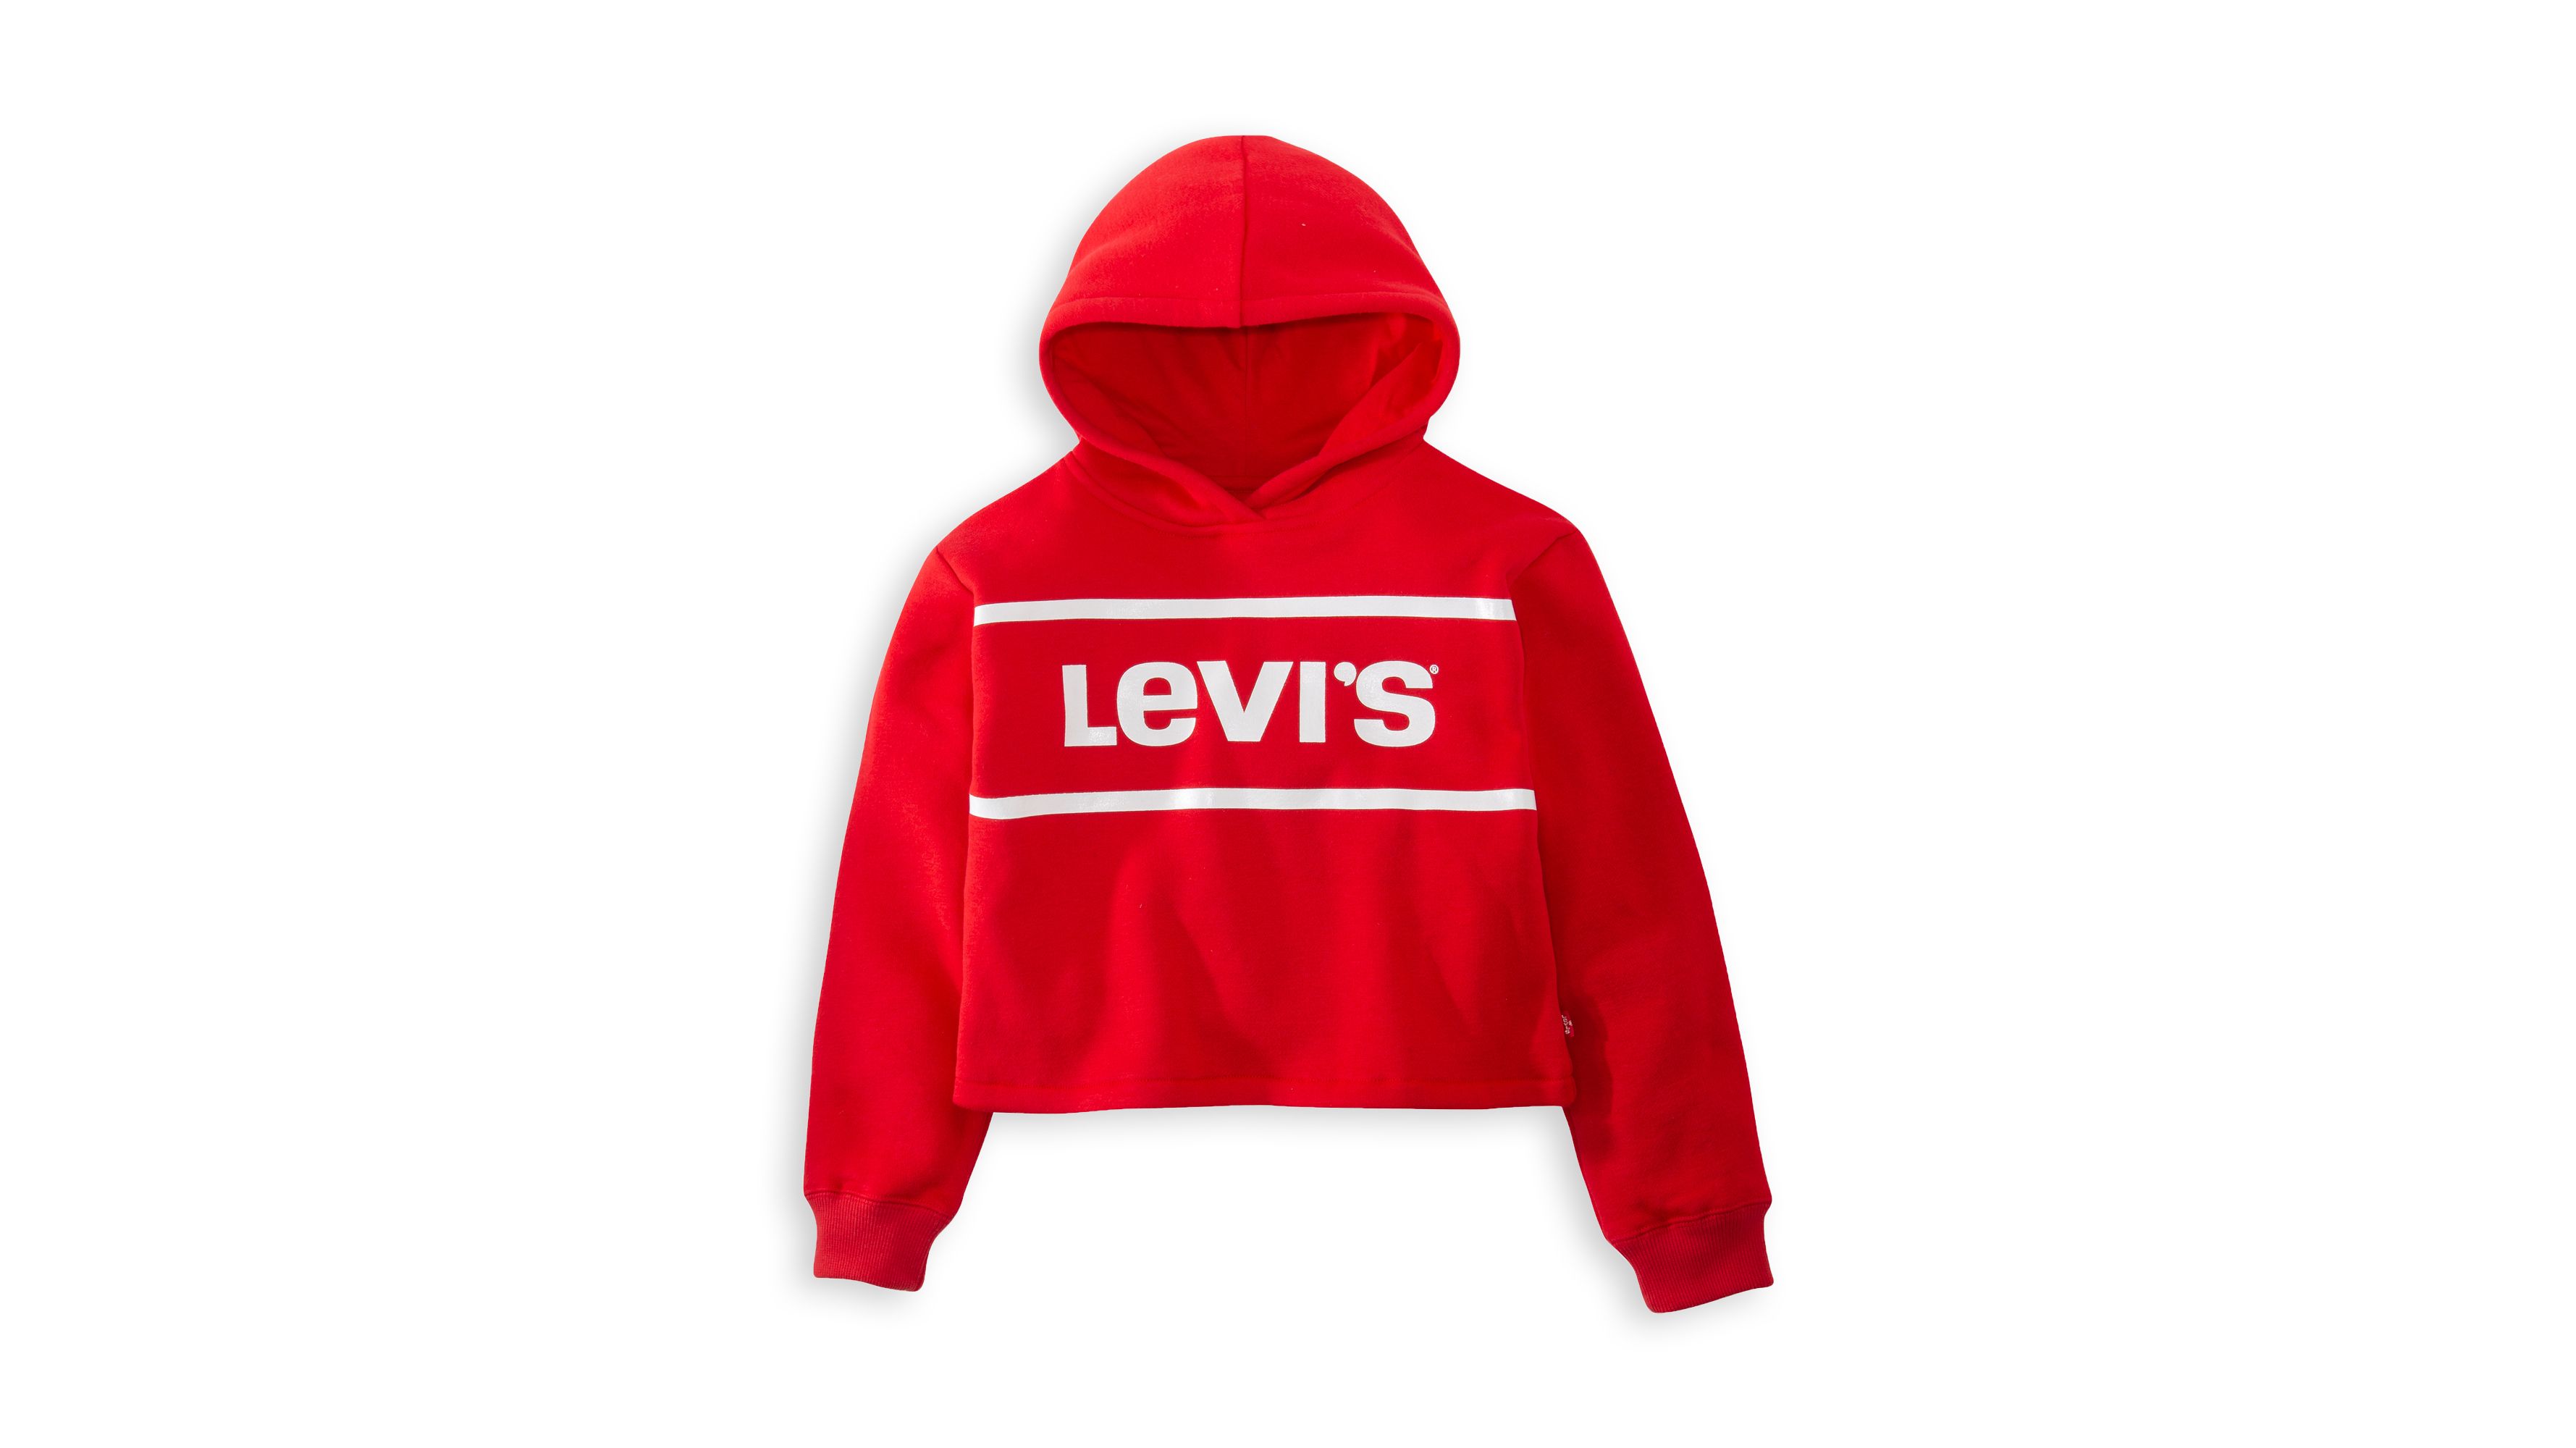 levis girls hoodie